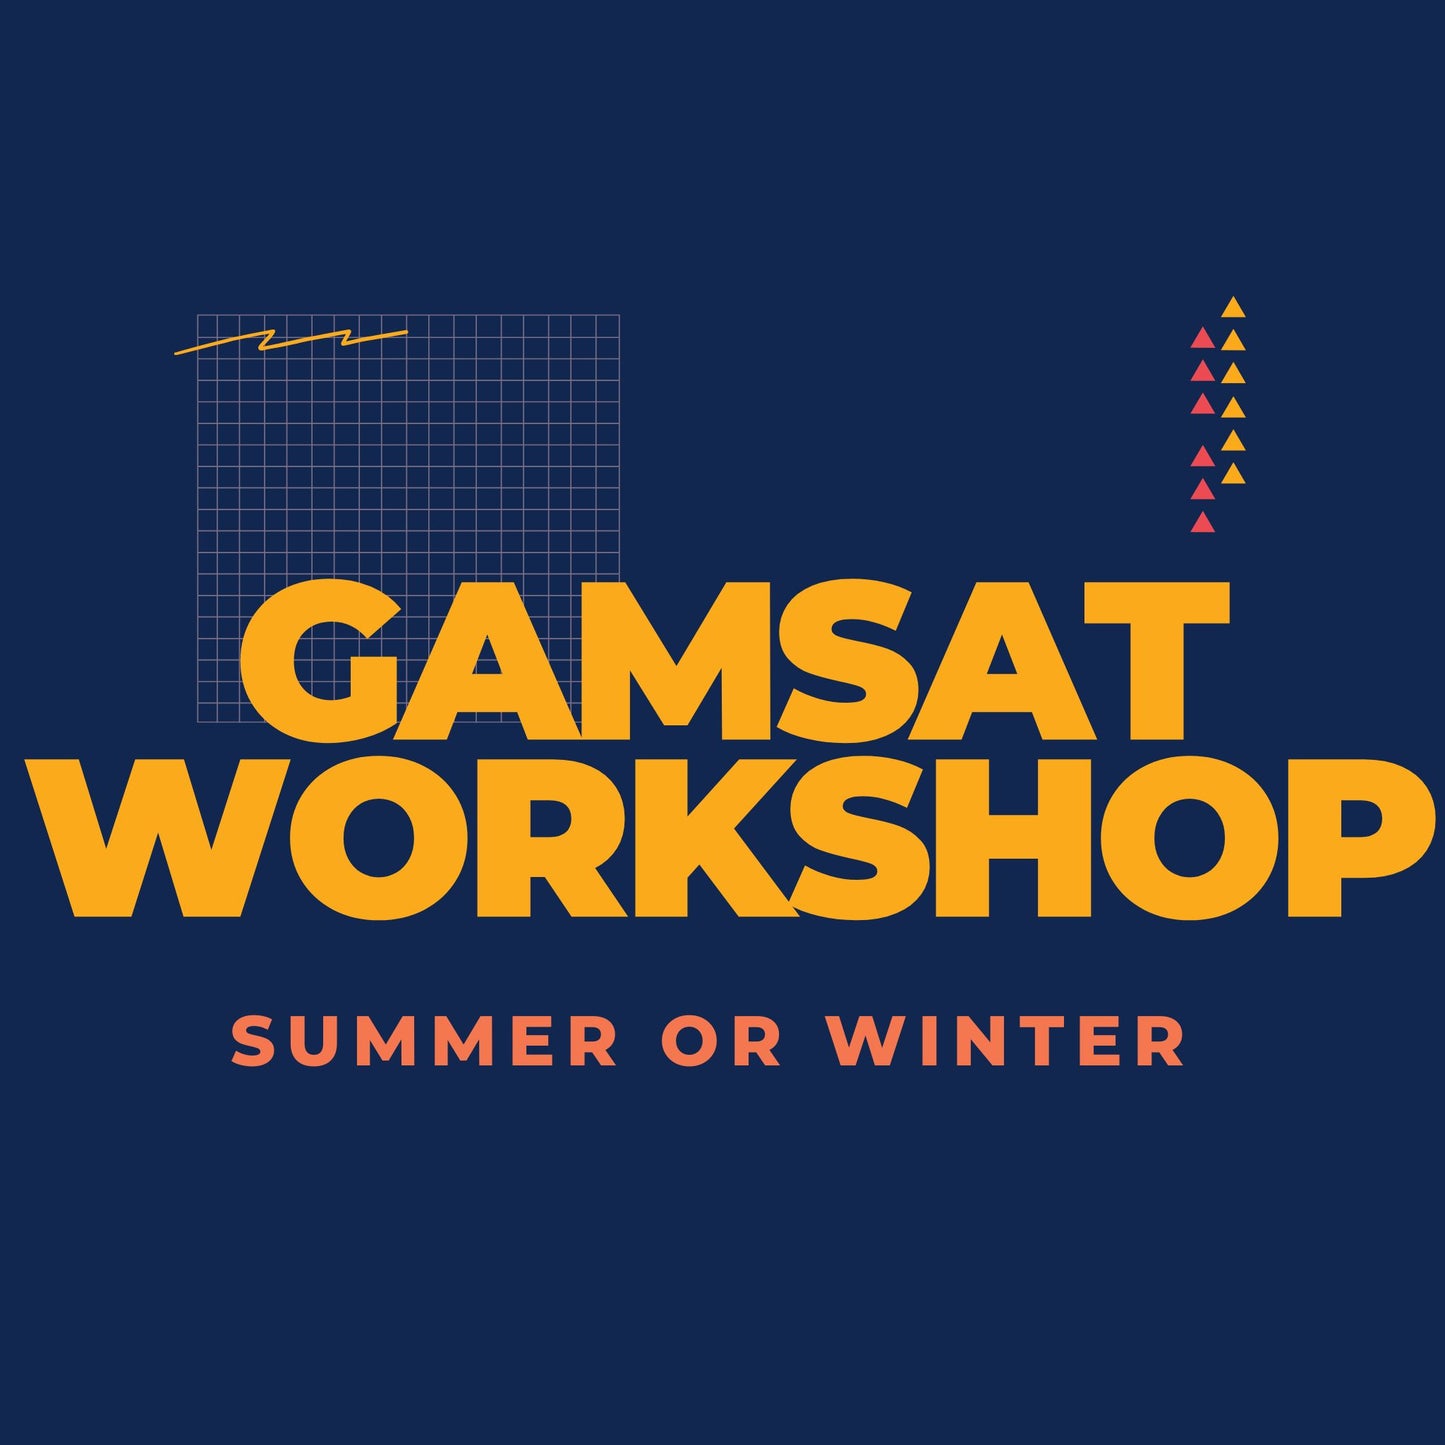 GAMSAT Workshop